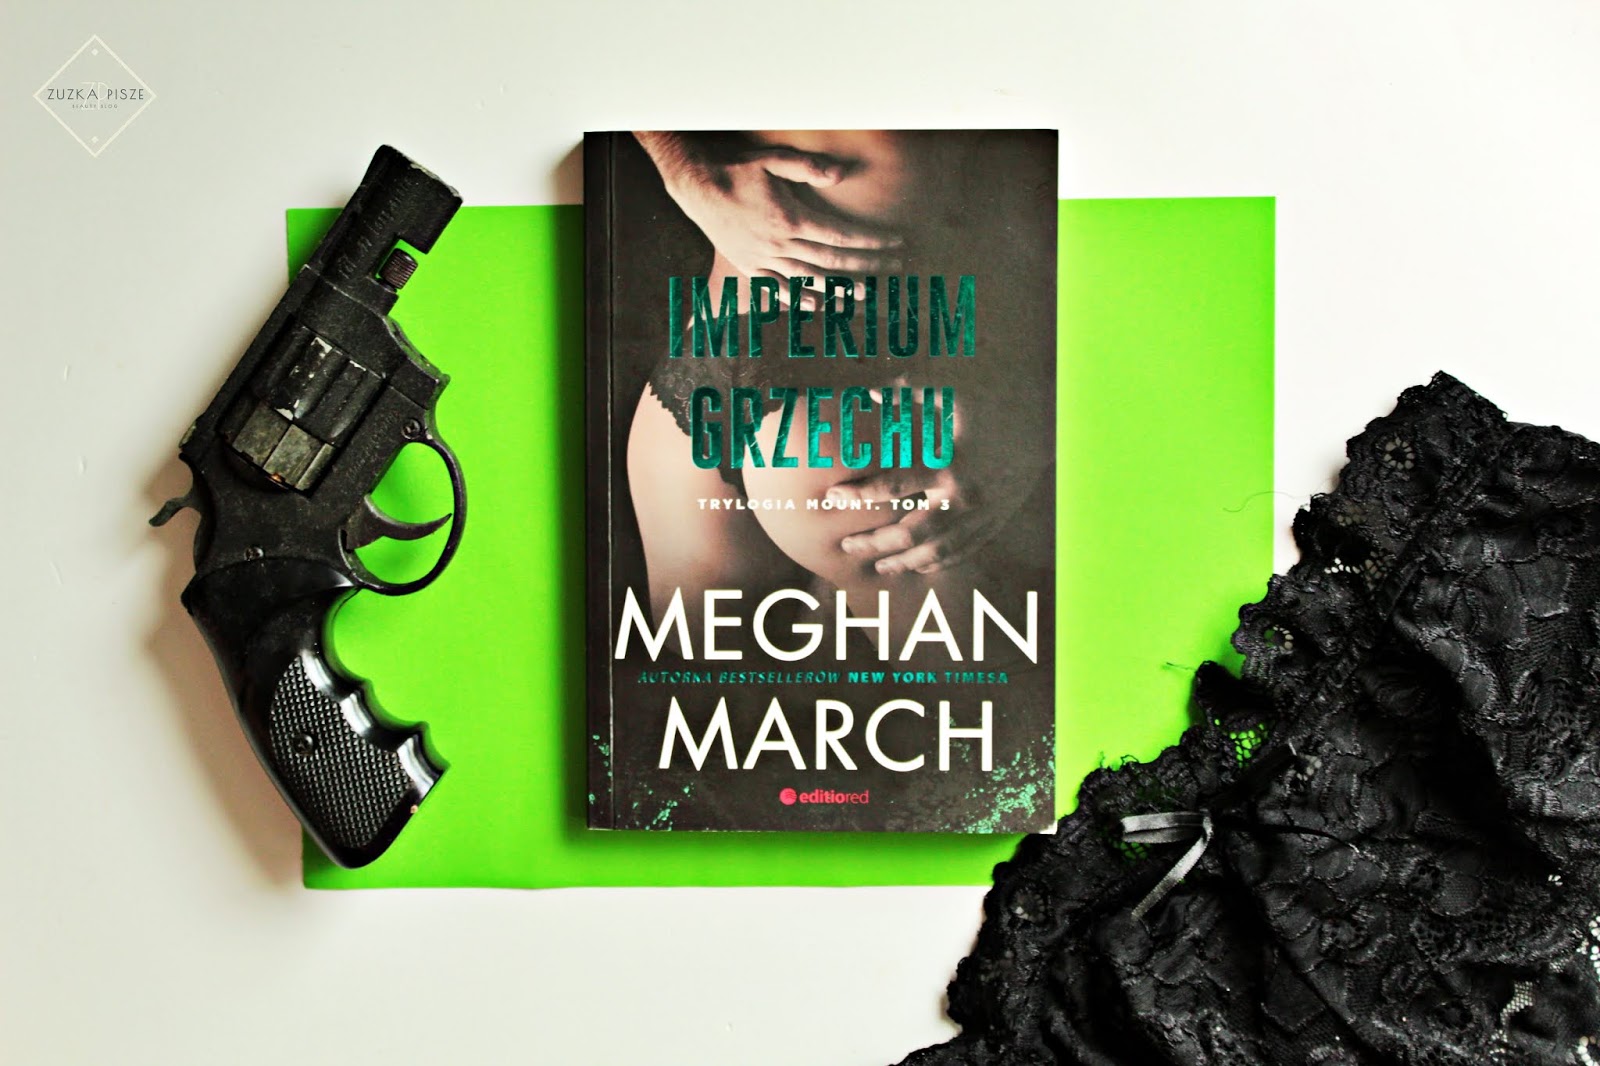 Meghan March "Imperium grzechu" - tom 3 trylogii MOUNT - recenzja